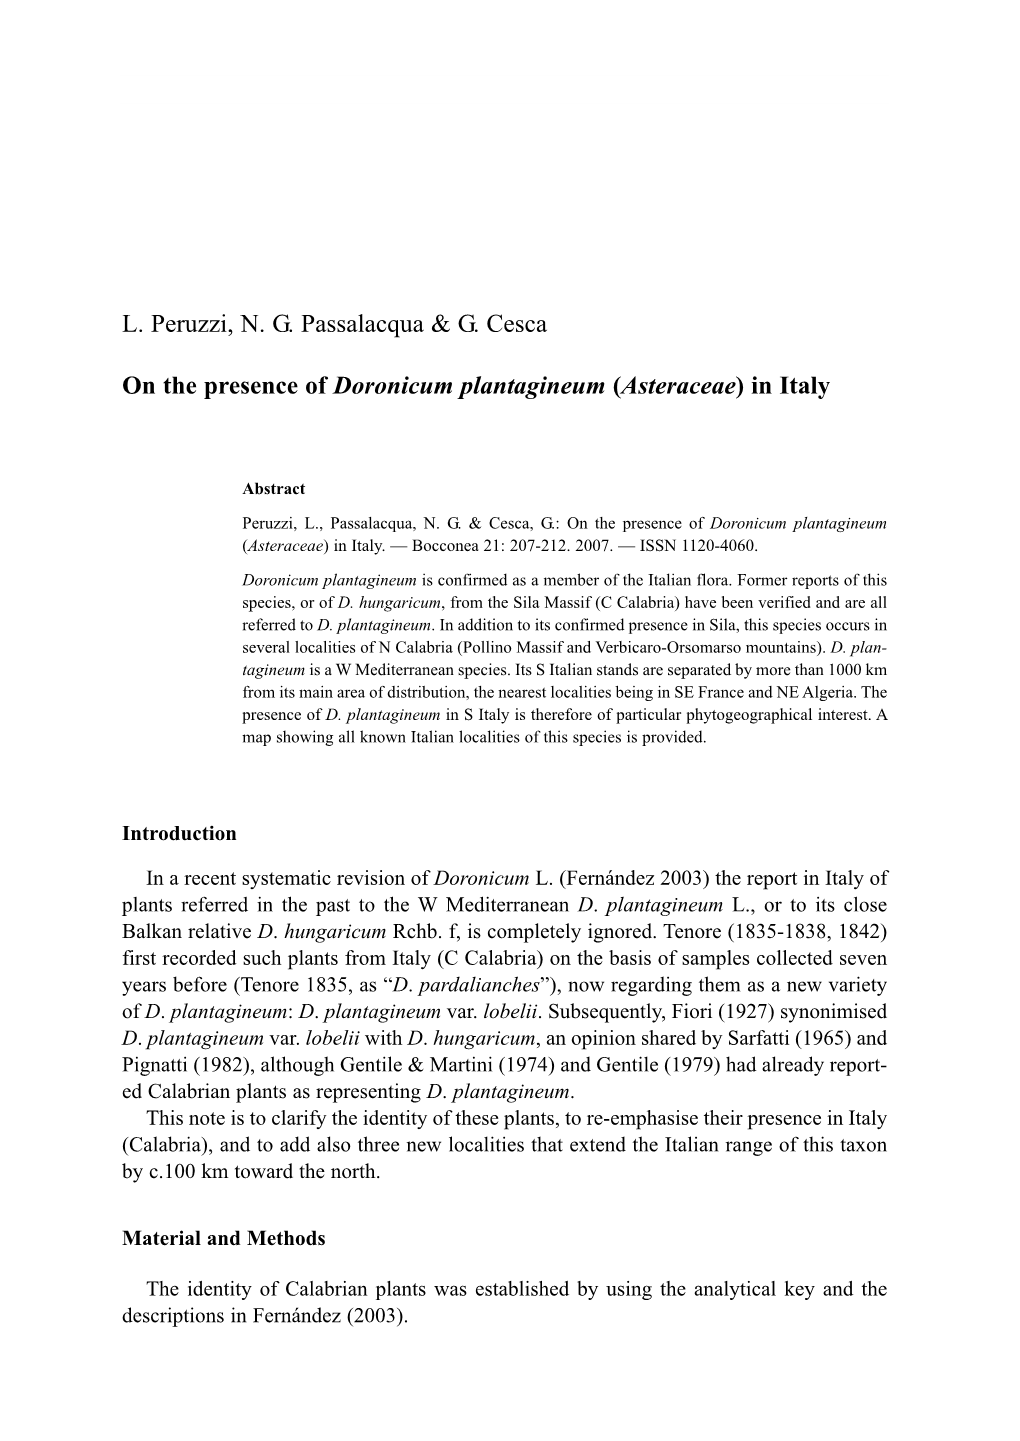 L. Peruzzi, N. G. Passalacqua & G. Cesca on the Presence Of